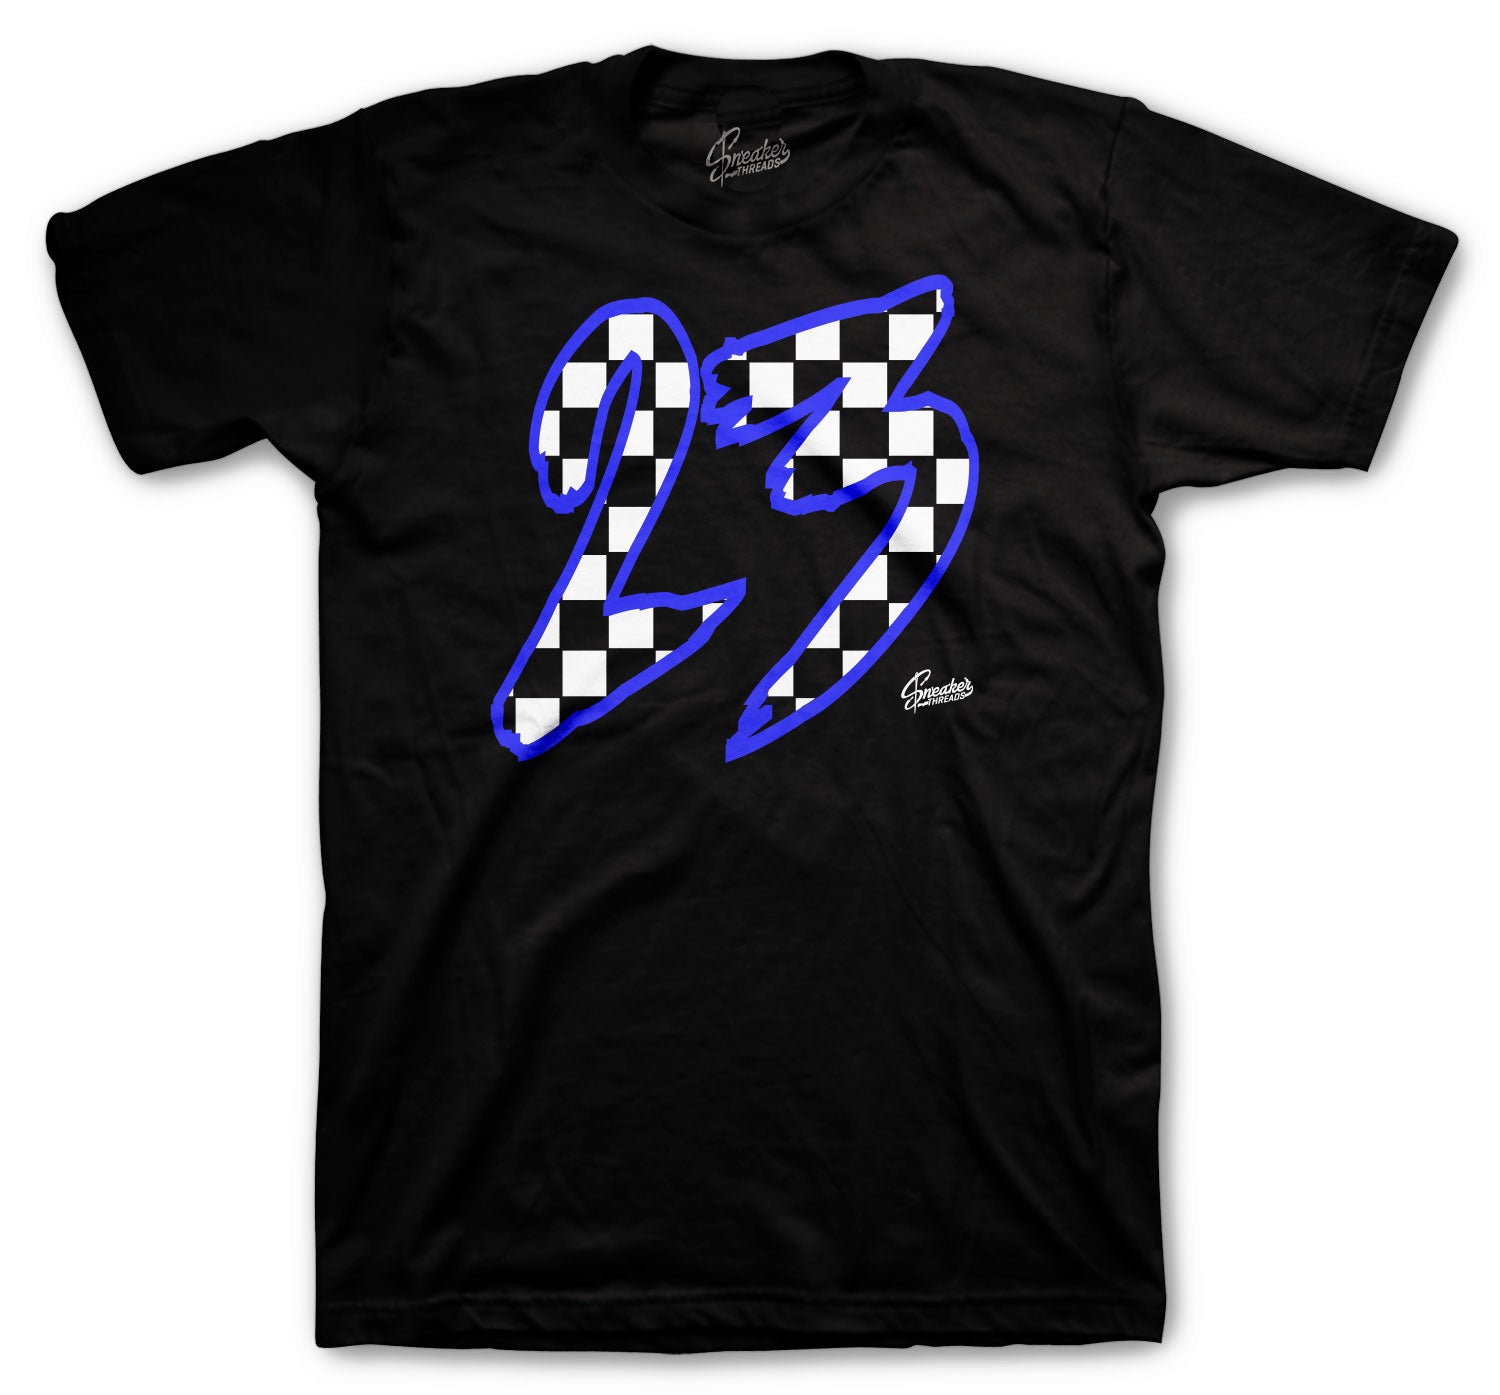 Retro 3 Racer Blue Shirt - Checkered- Black